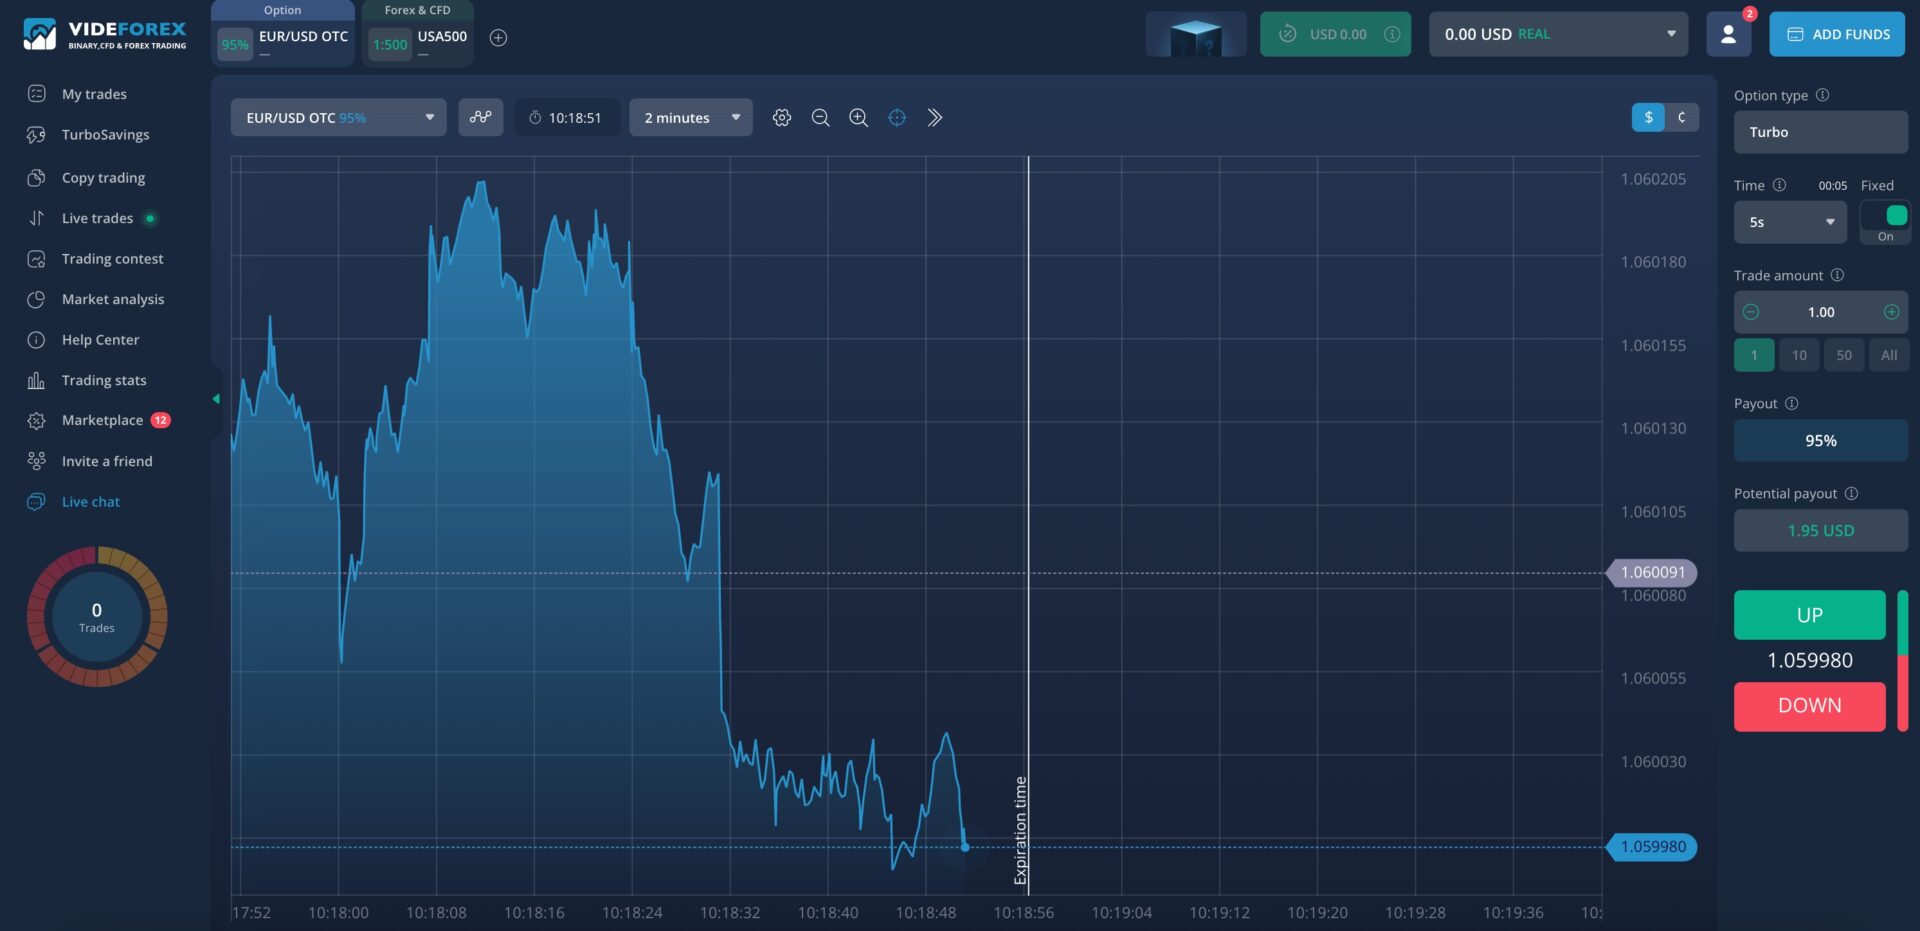 Screenshot of Videforex trading platform